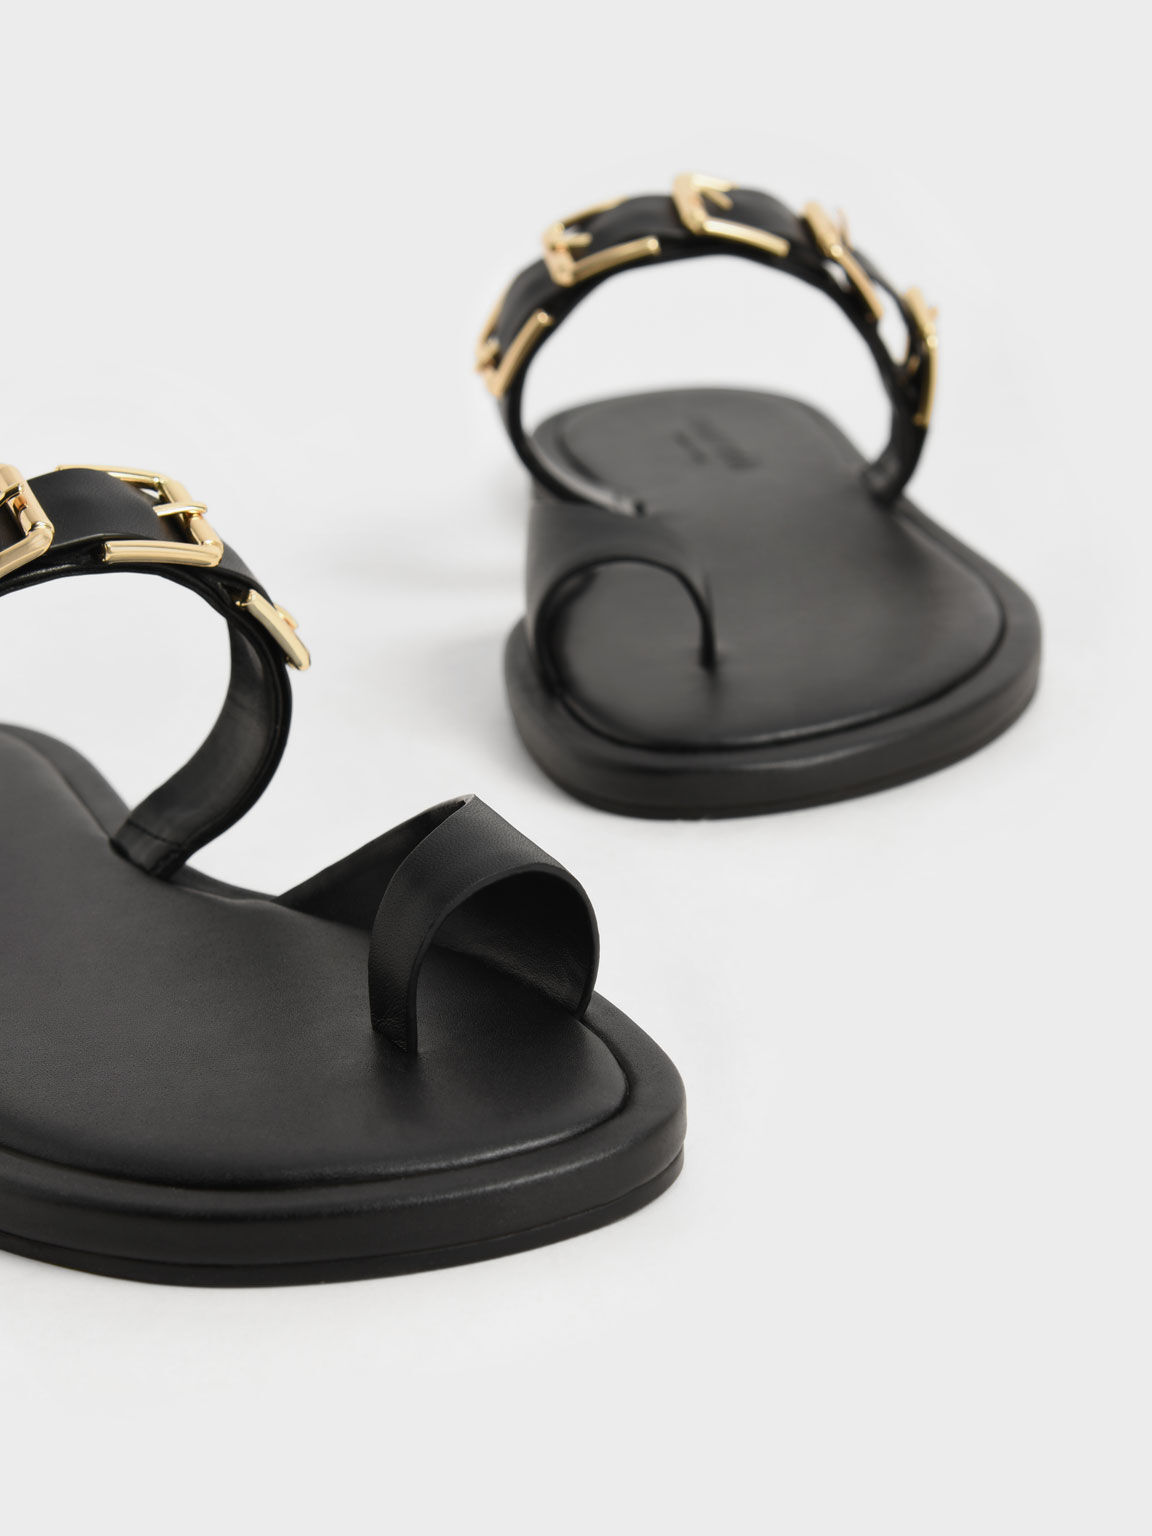 Sandal Toe-Ring Buckled Leather, Black, hi-res